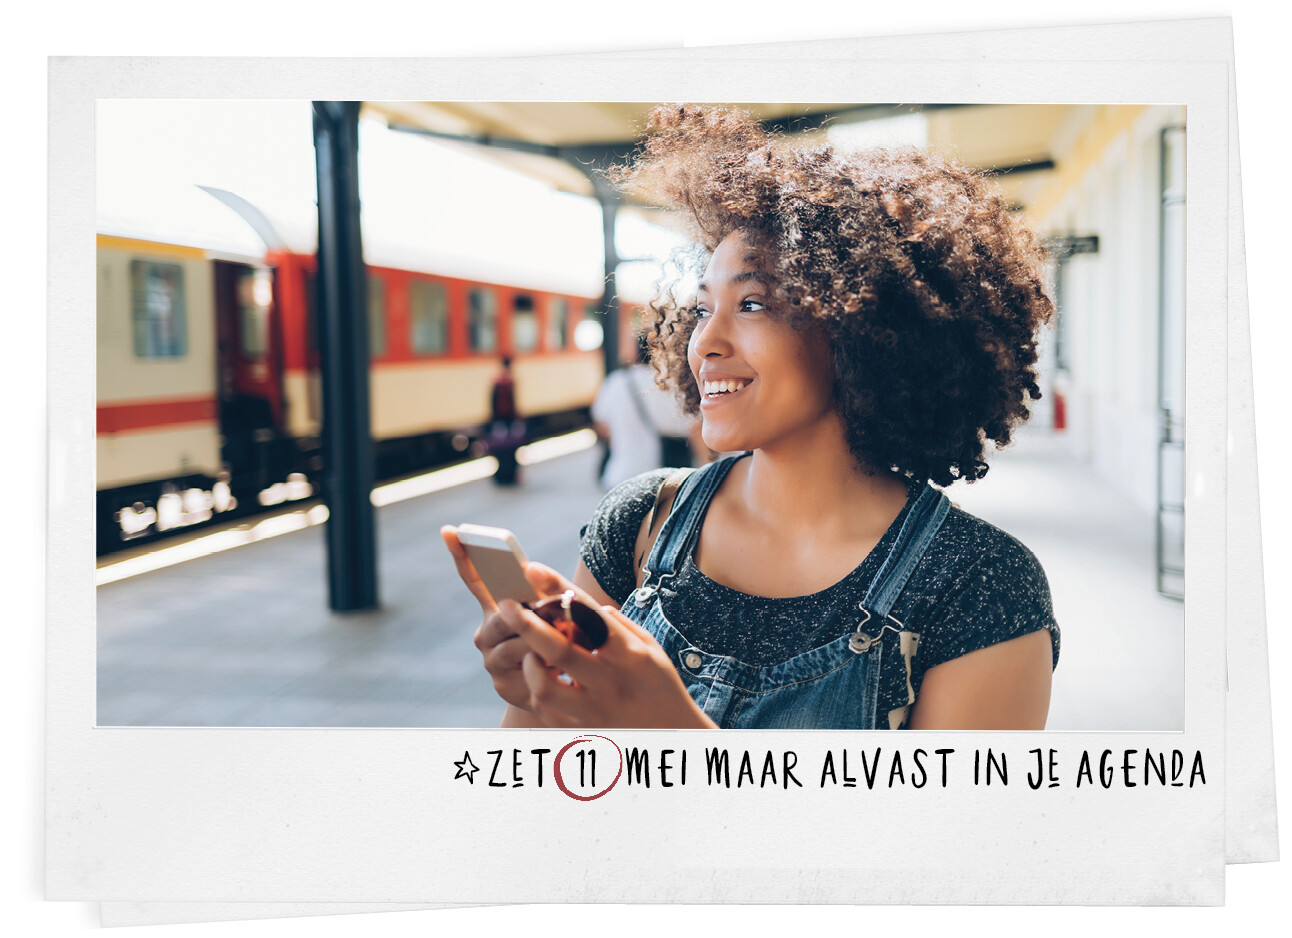 Vrouw lachend met haar telefoon op het trein station